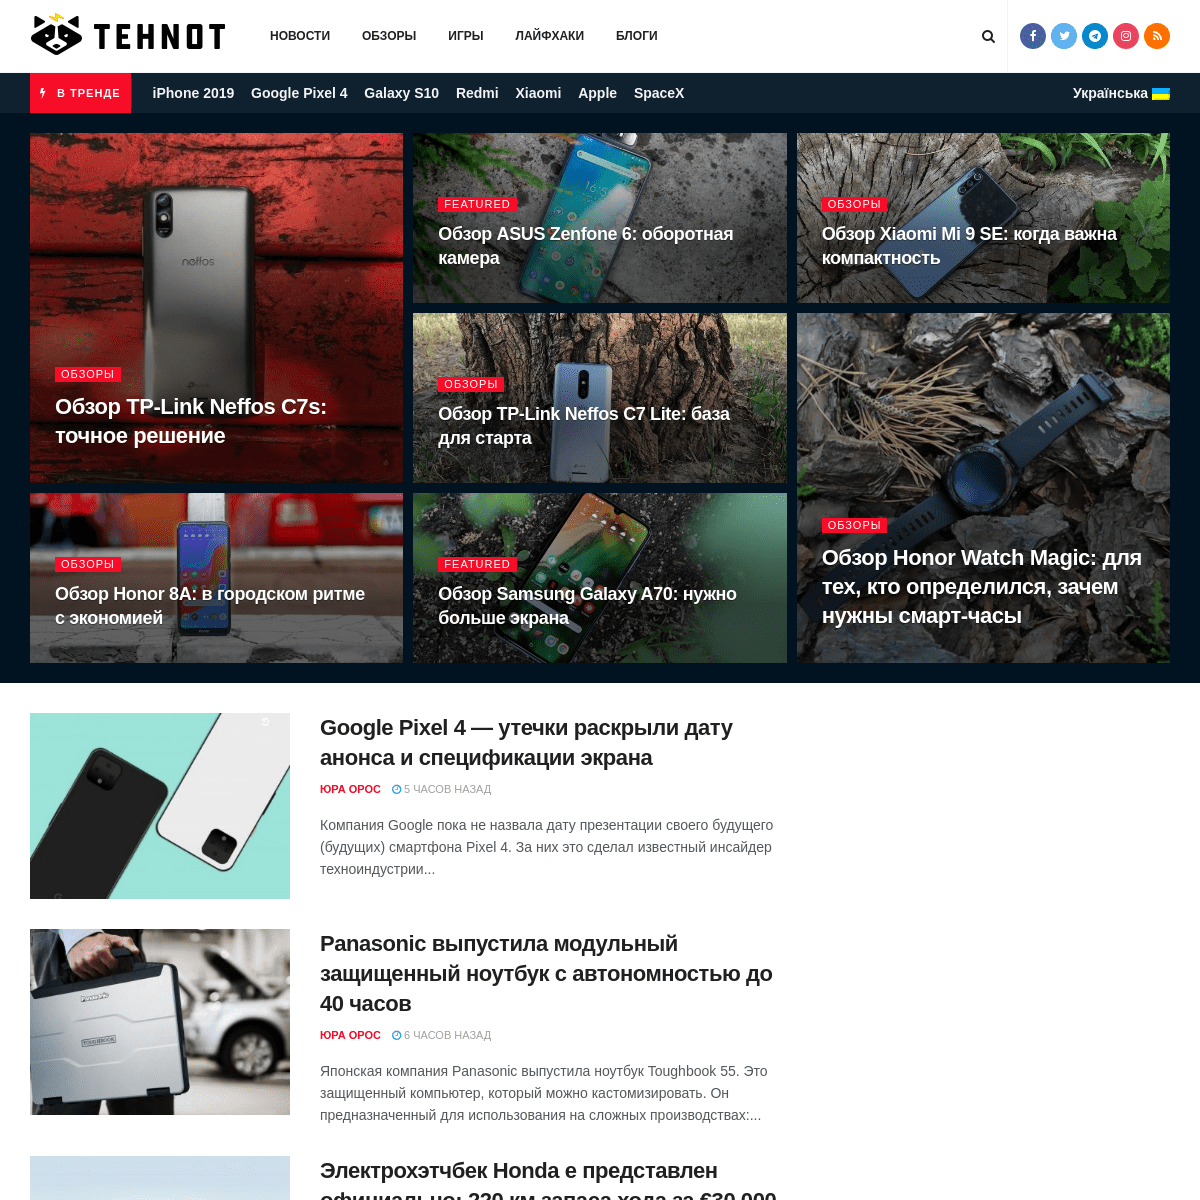 Tehnot.com – главные новости из мира высоких технологий.